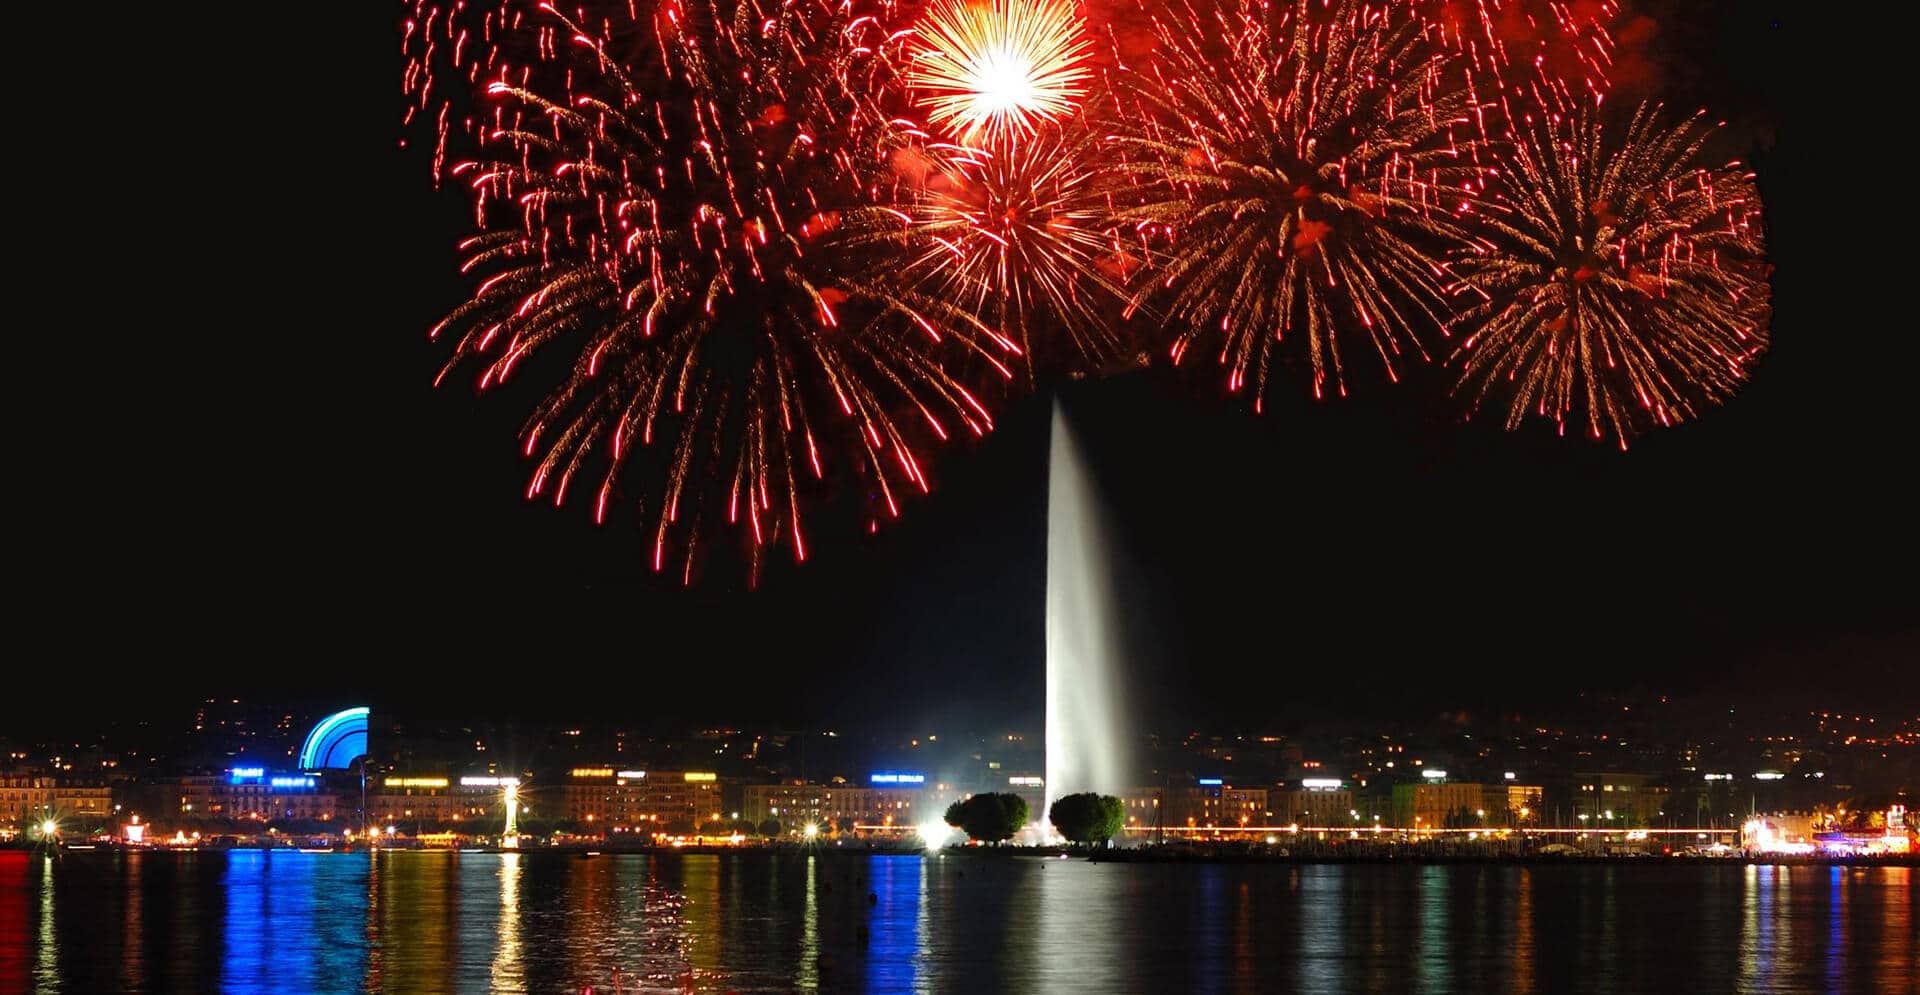 Fireworks exploding over Lake Geneva